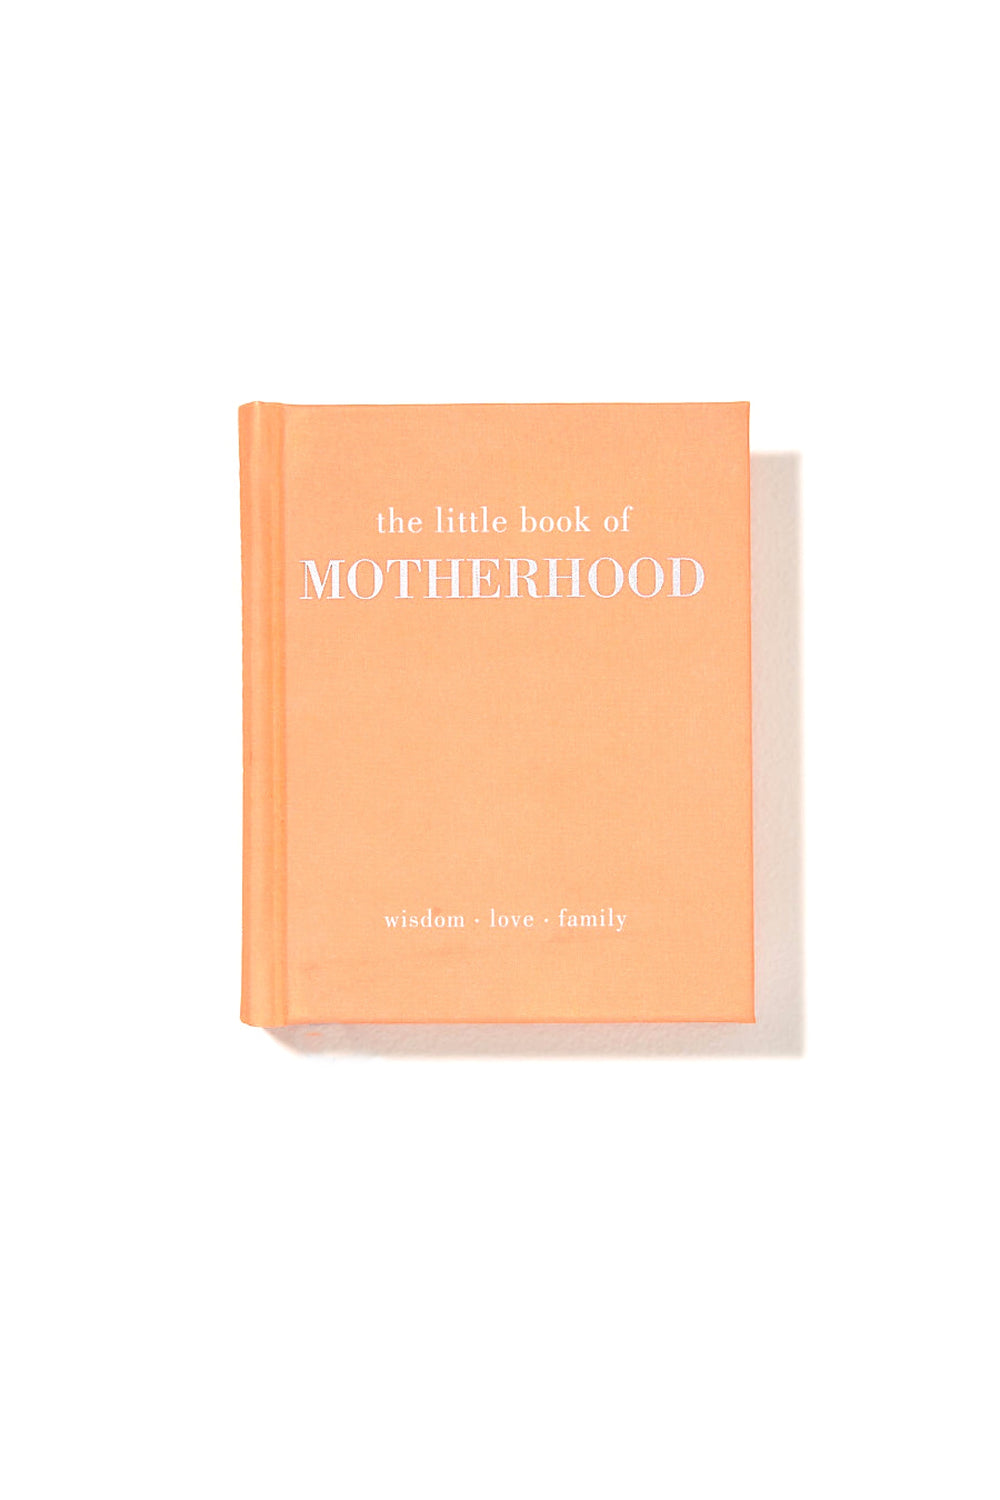 The Little Book of Motherhood